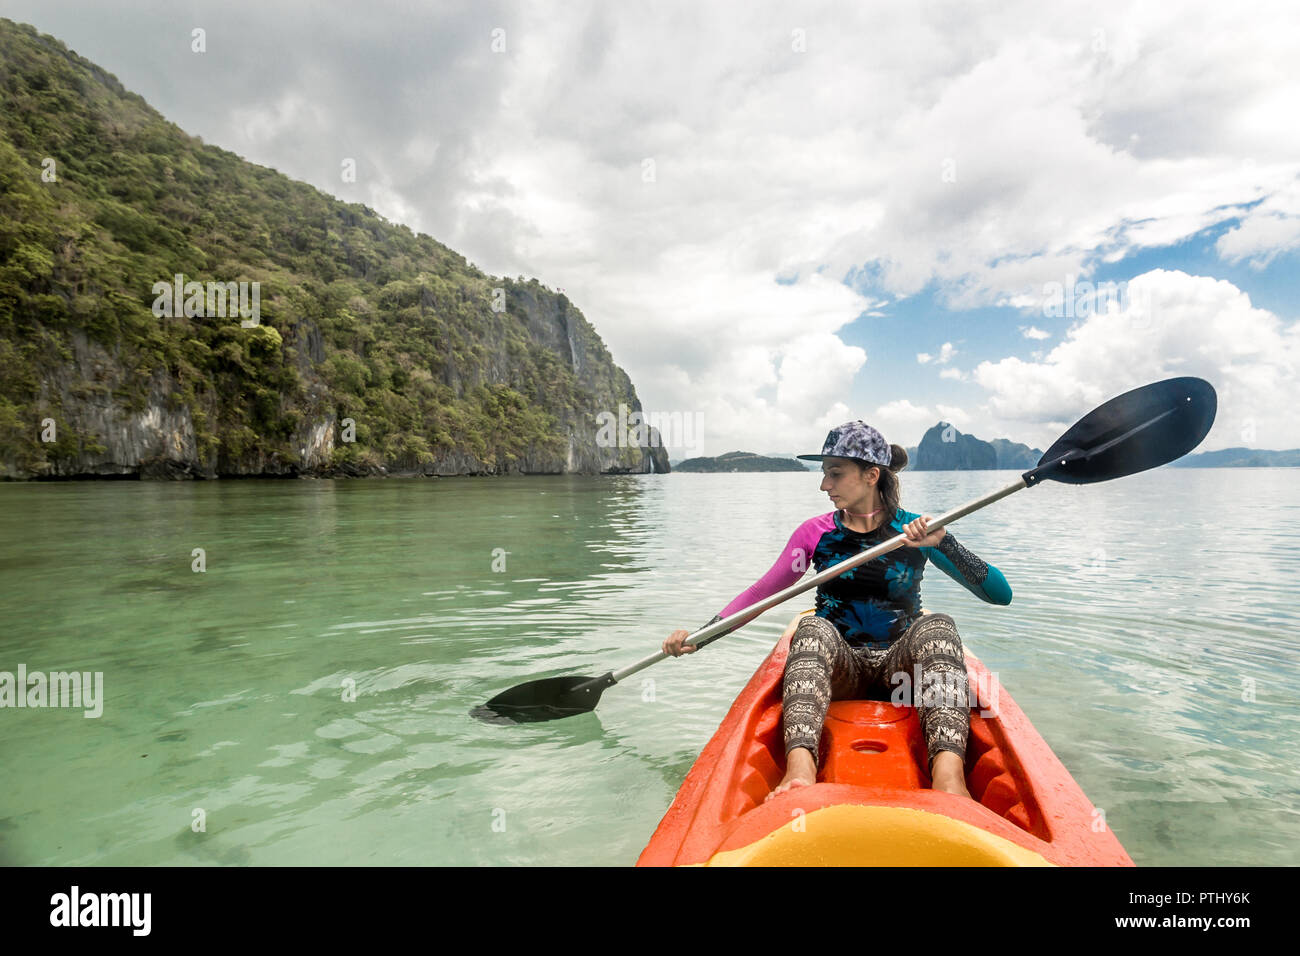 Woman Paddling A Kayak In The Island Mountains Kayaking In El Nido